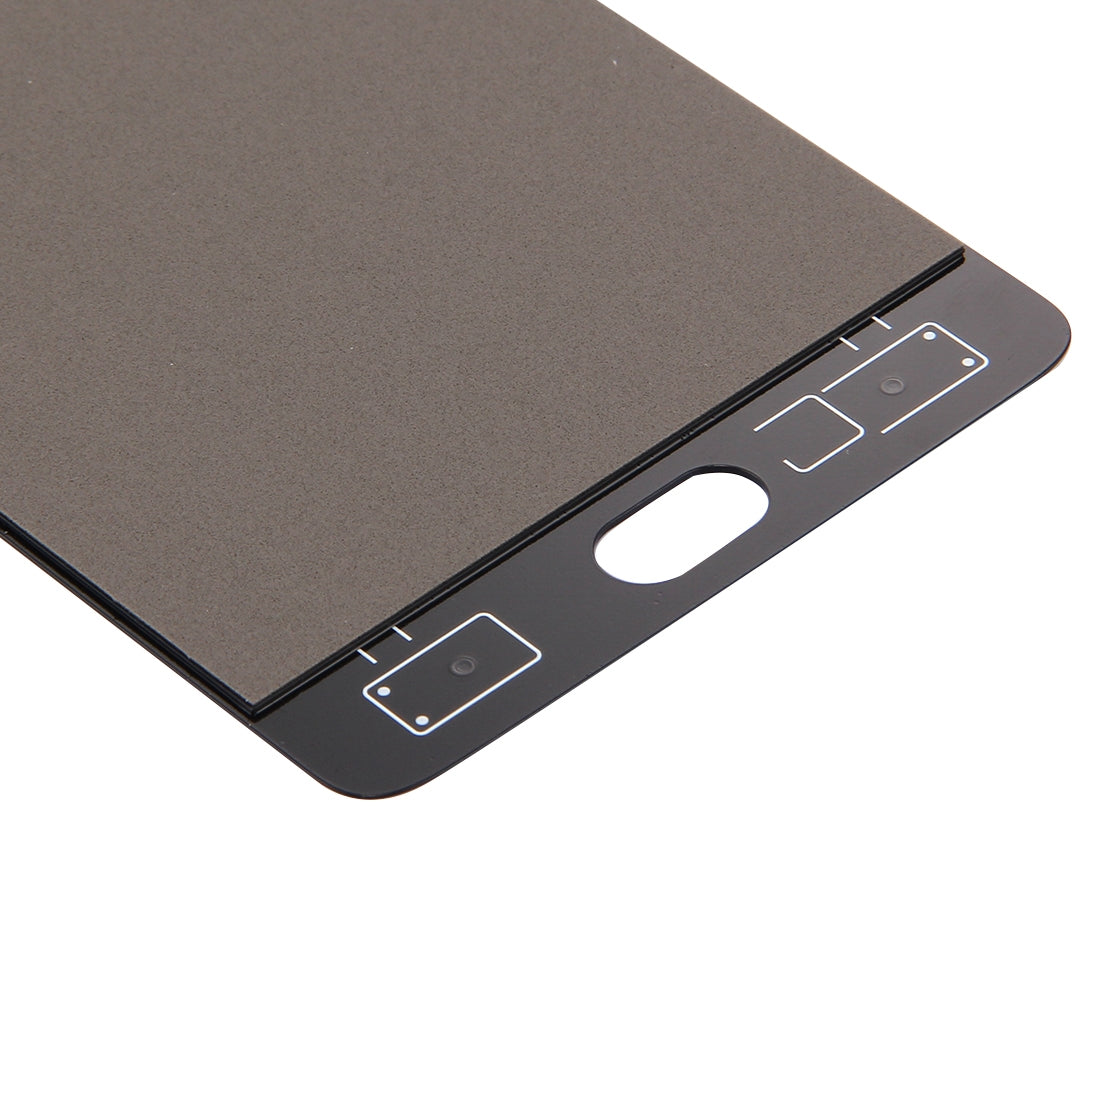 Ecran LCD + Vitre Tactile OnePlus 3T Noir